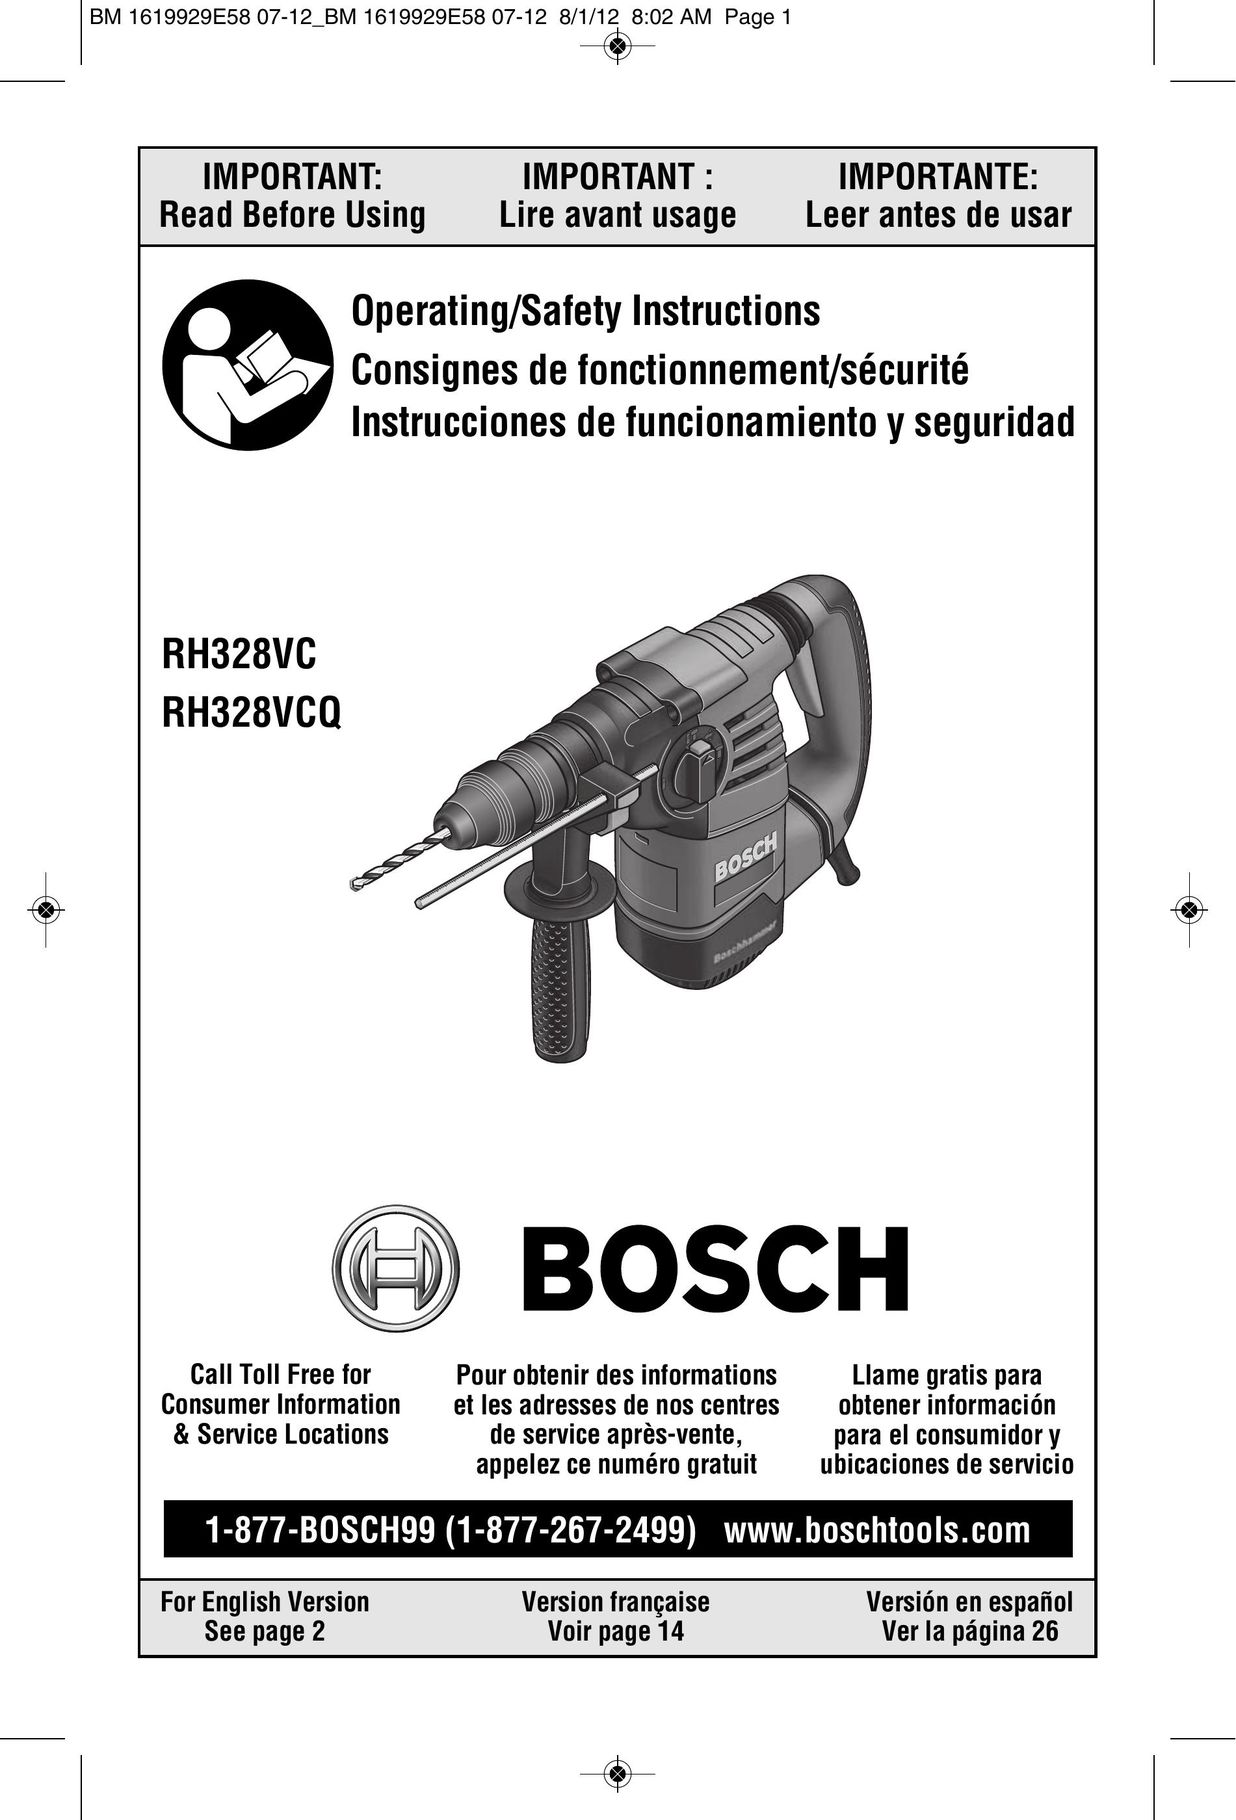 Bosch Power Tools RH328VC Power Hammer User Manual